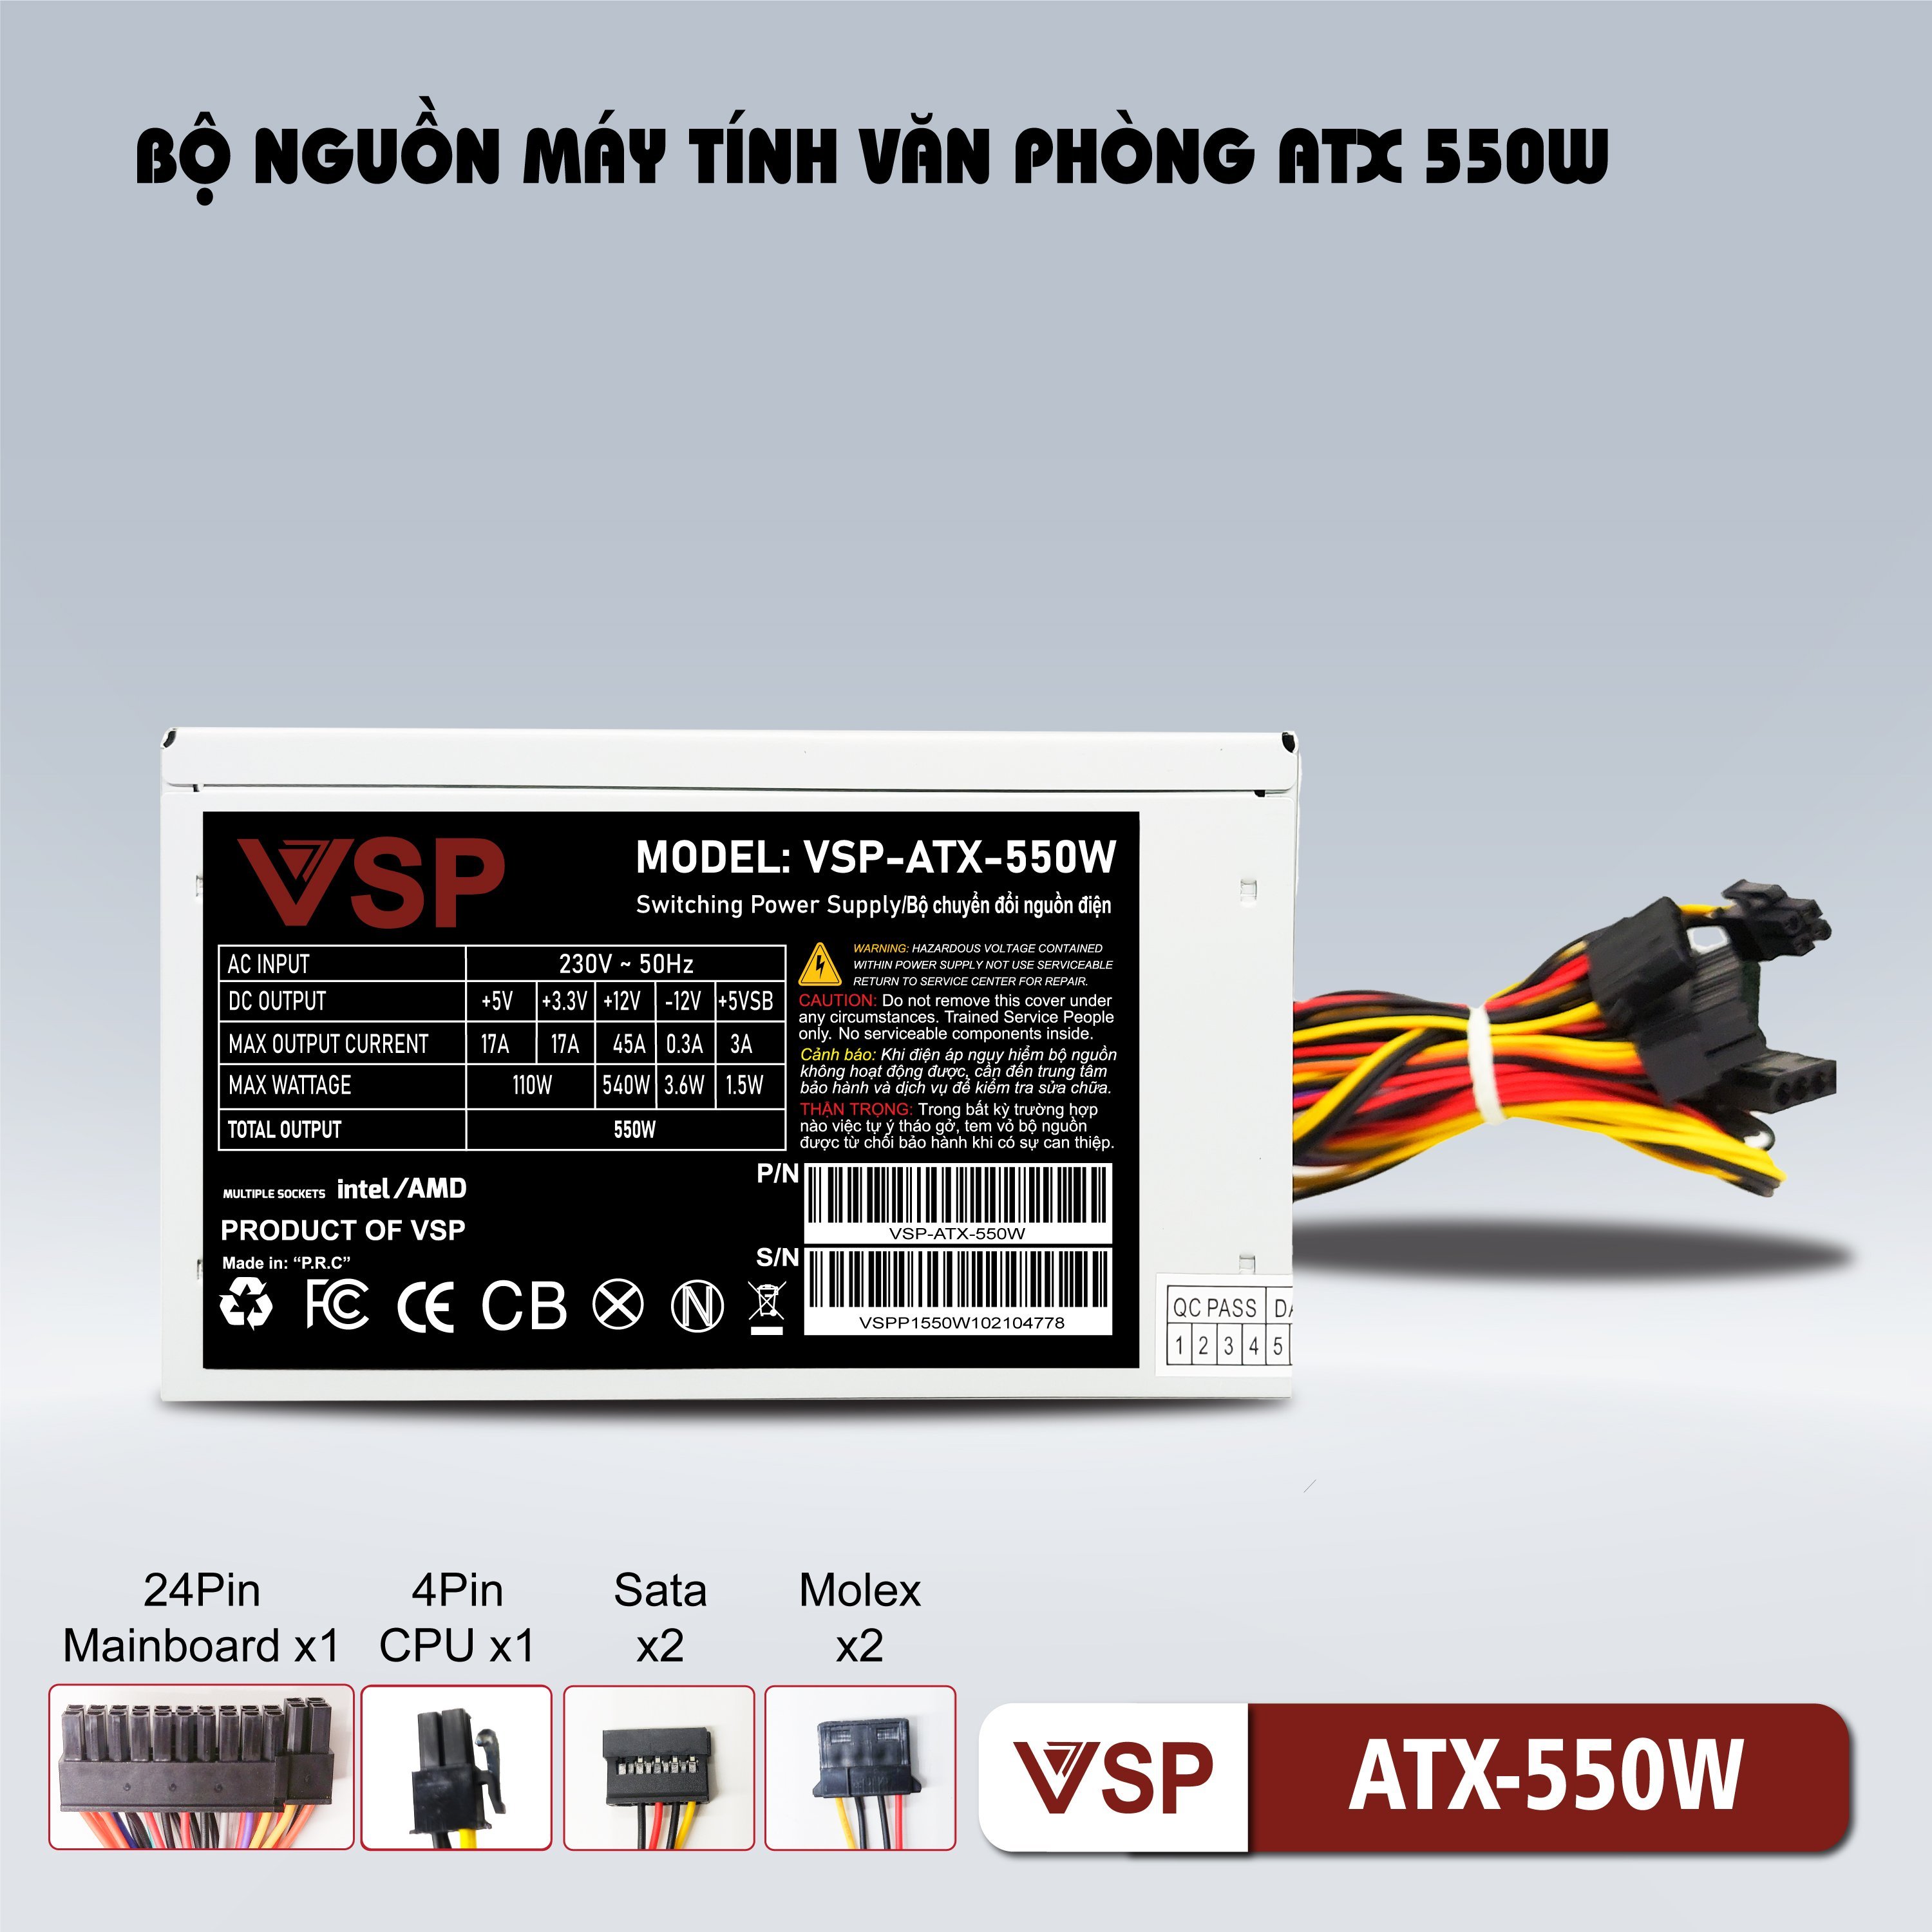 Nguồn máy tính VSP 550W ATX - Hàng chính hãng VSP phân phối